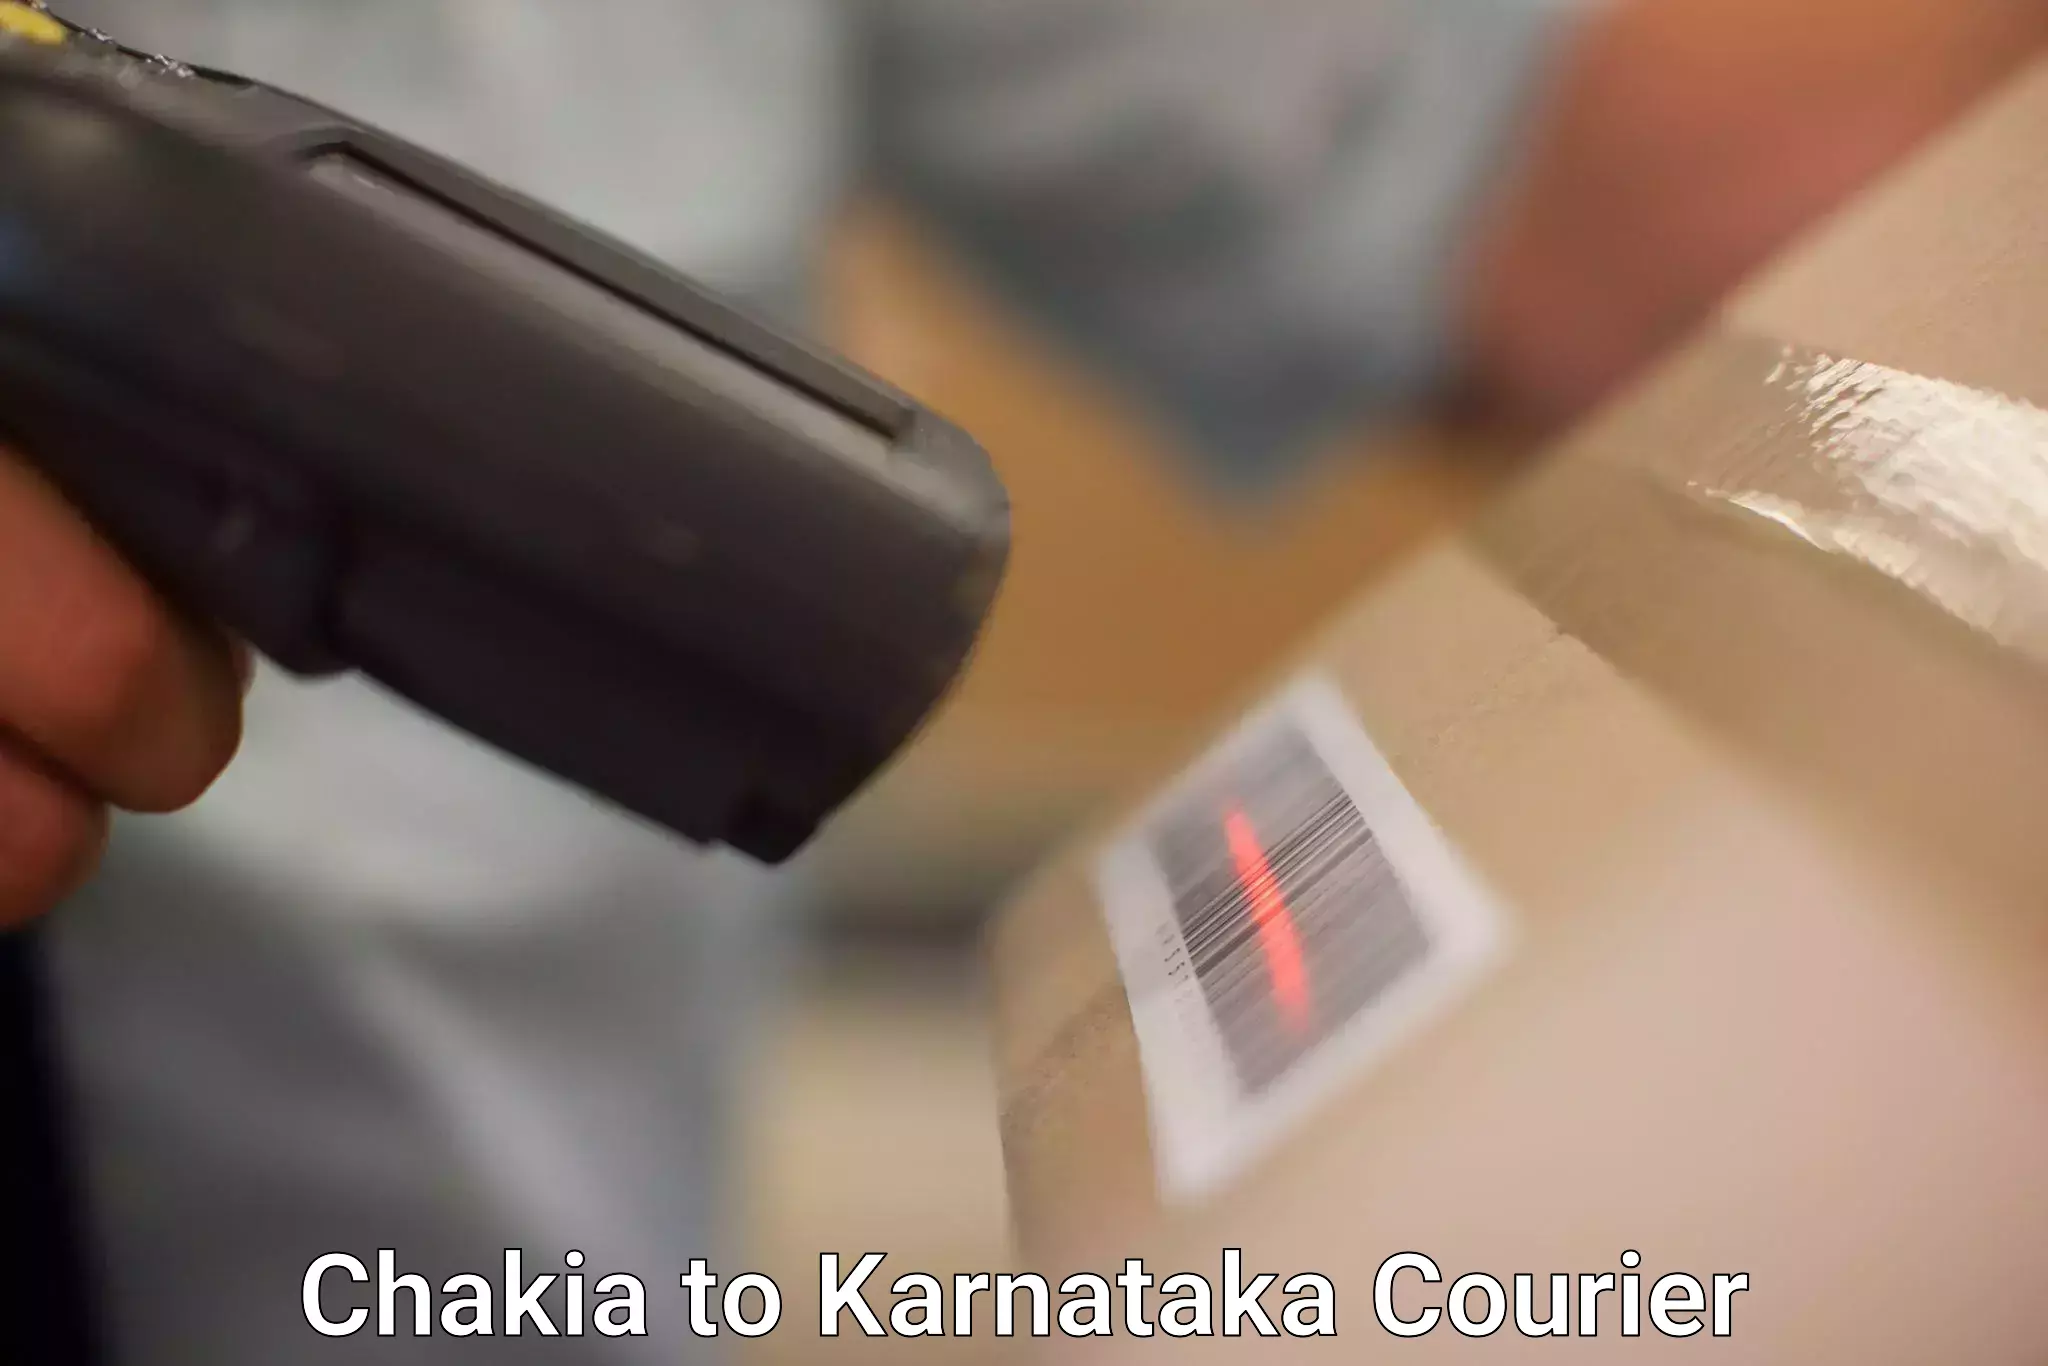 Same-day delivery solutions Chakia to Karnataka